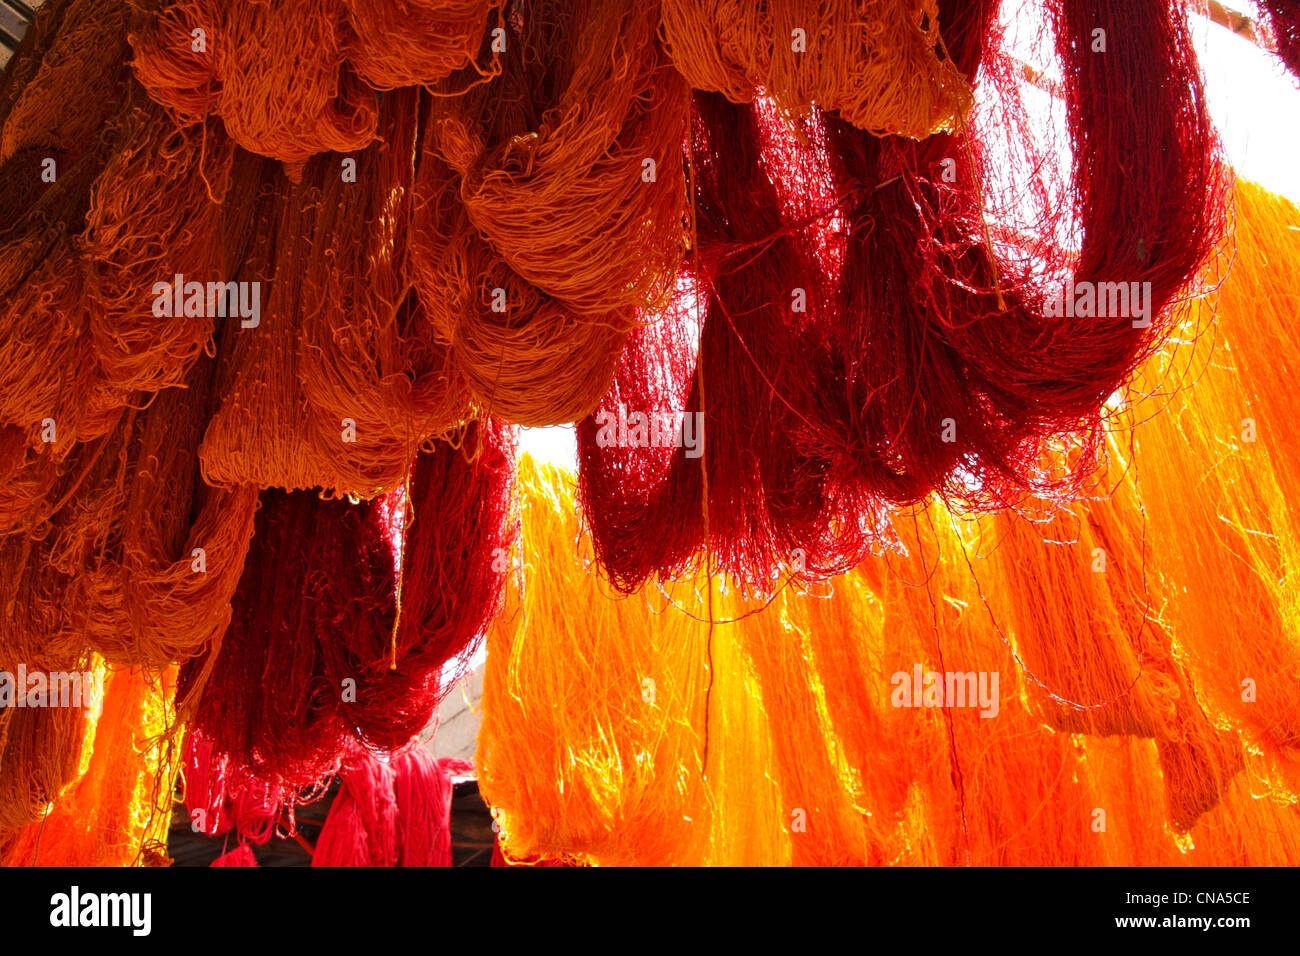 Recién teñidas de rojo y naranja madejas de lana cuelgue el secado al sol en el Zoco de los tintoreros de lana en la medina de Marrakech, Marruecos Foto de stock